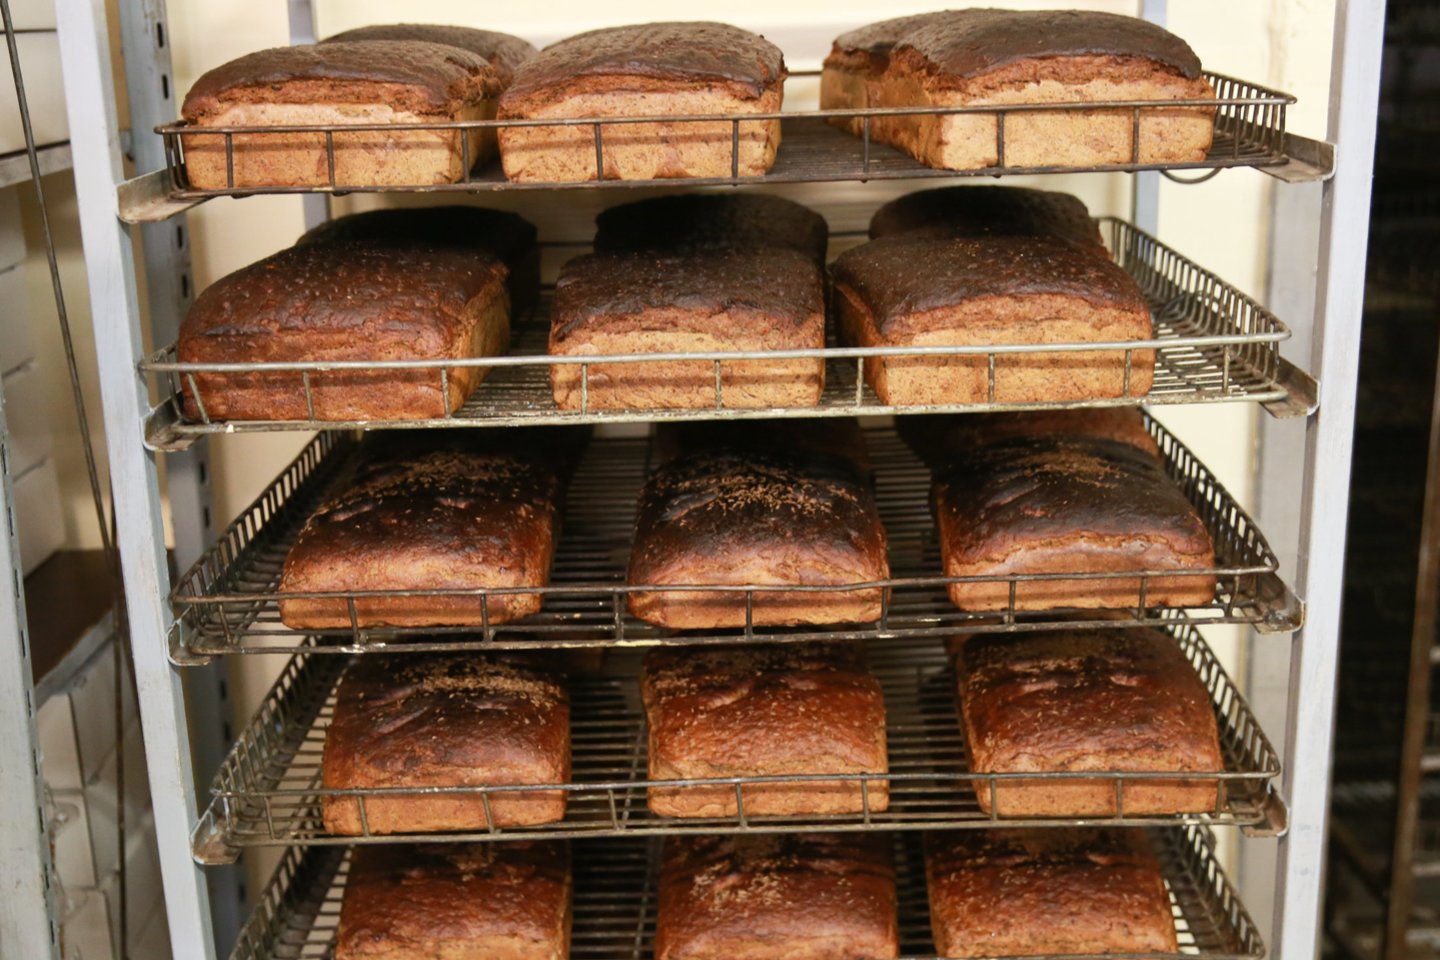 Ekspertai nieko gero nežada – duonos kainos ir toliau gali kilti.<br>R.Danisevičiaus nuotr.